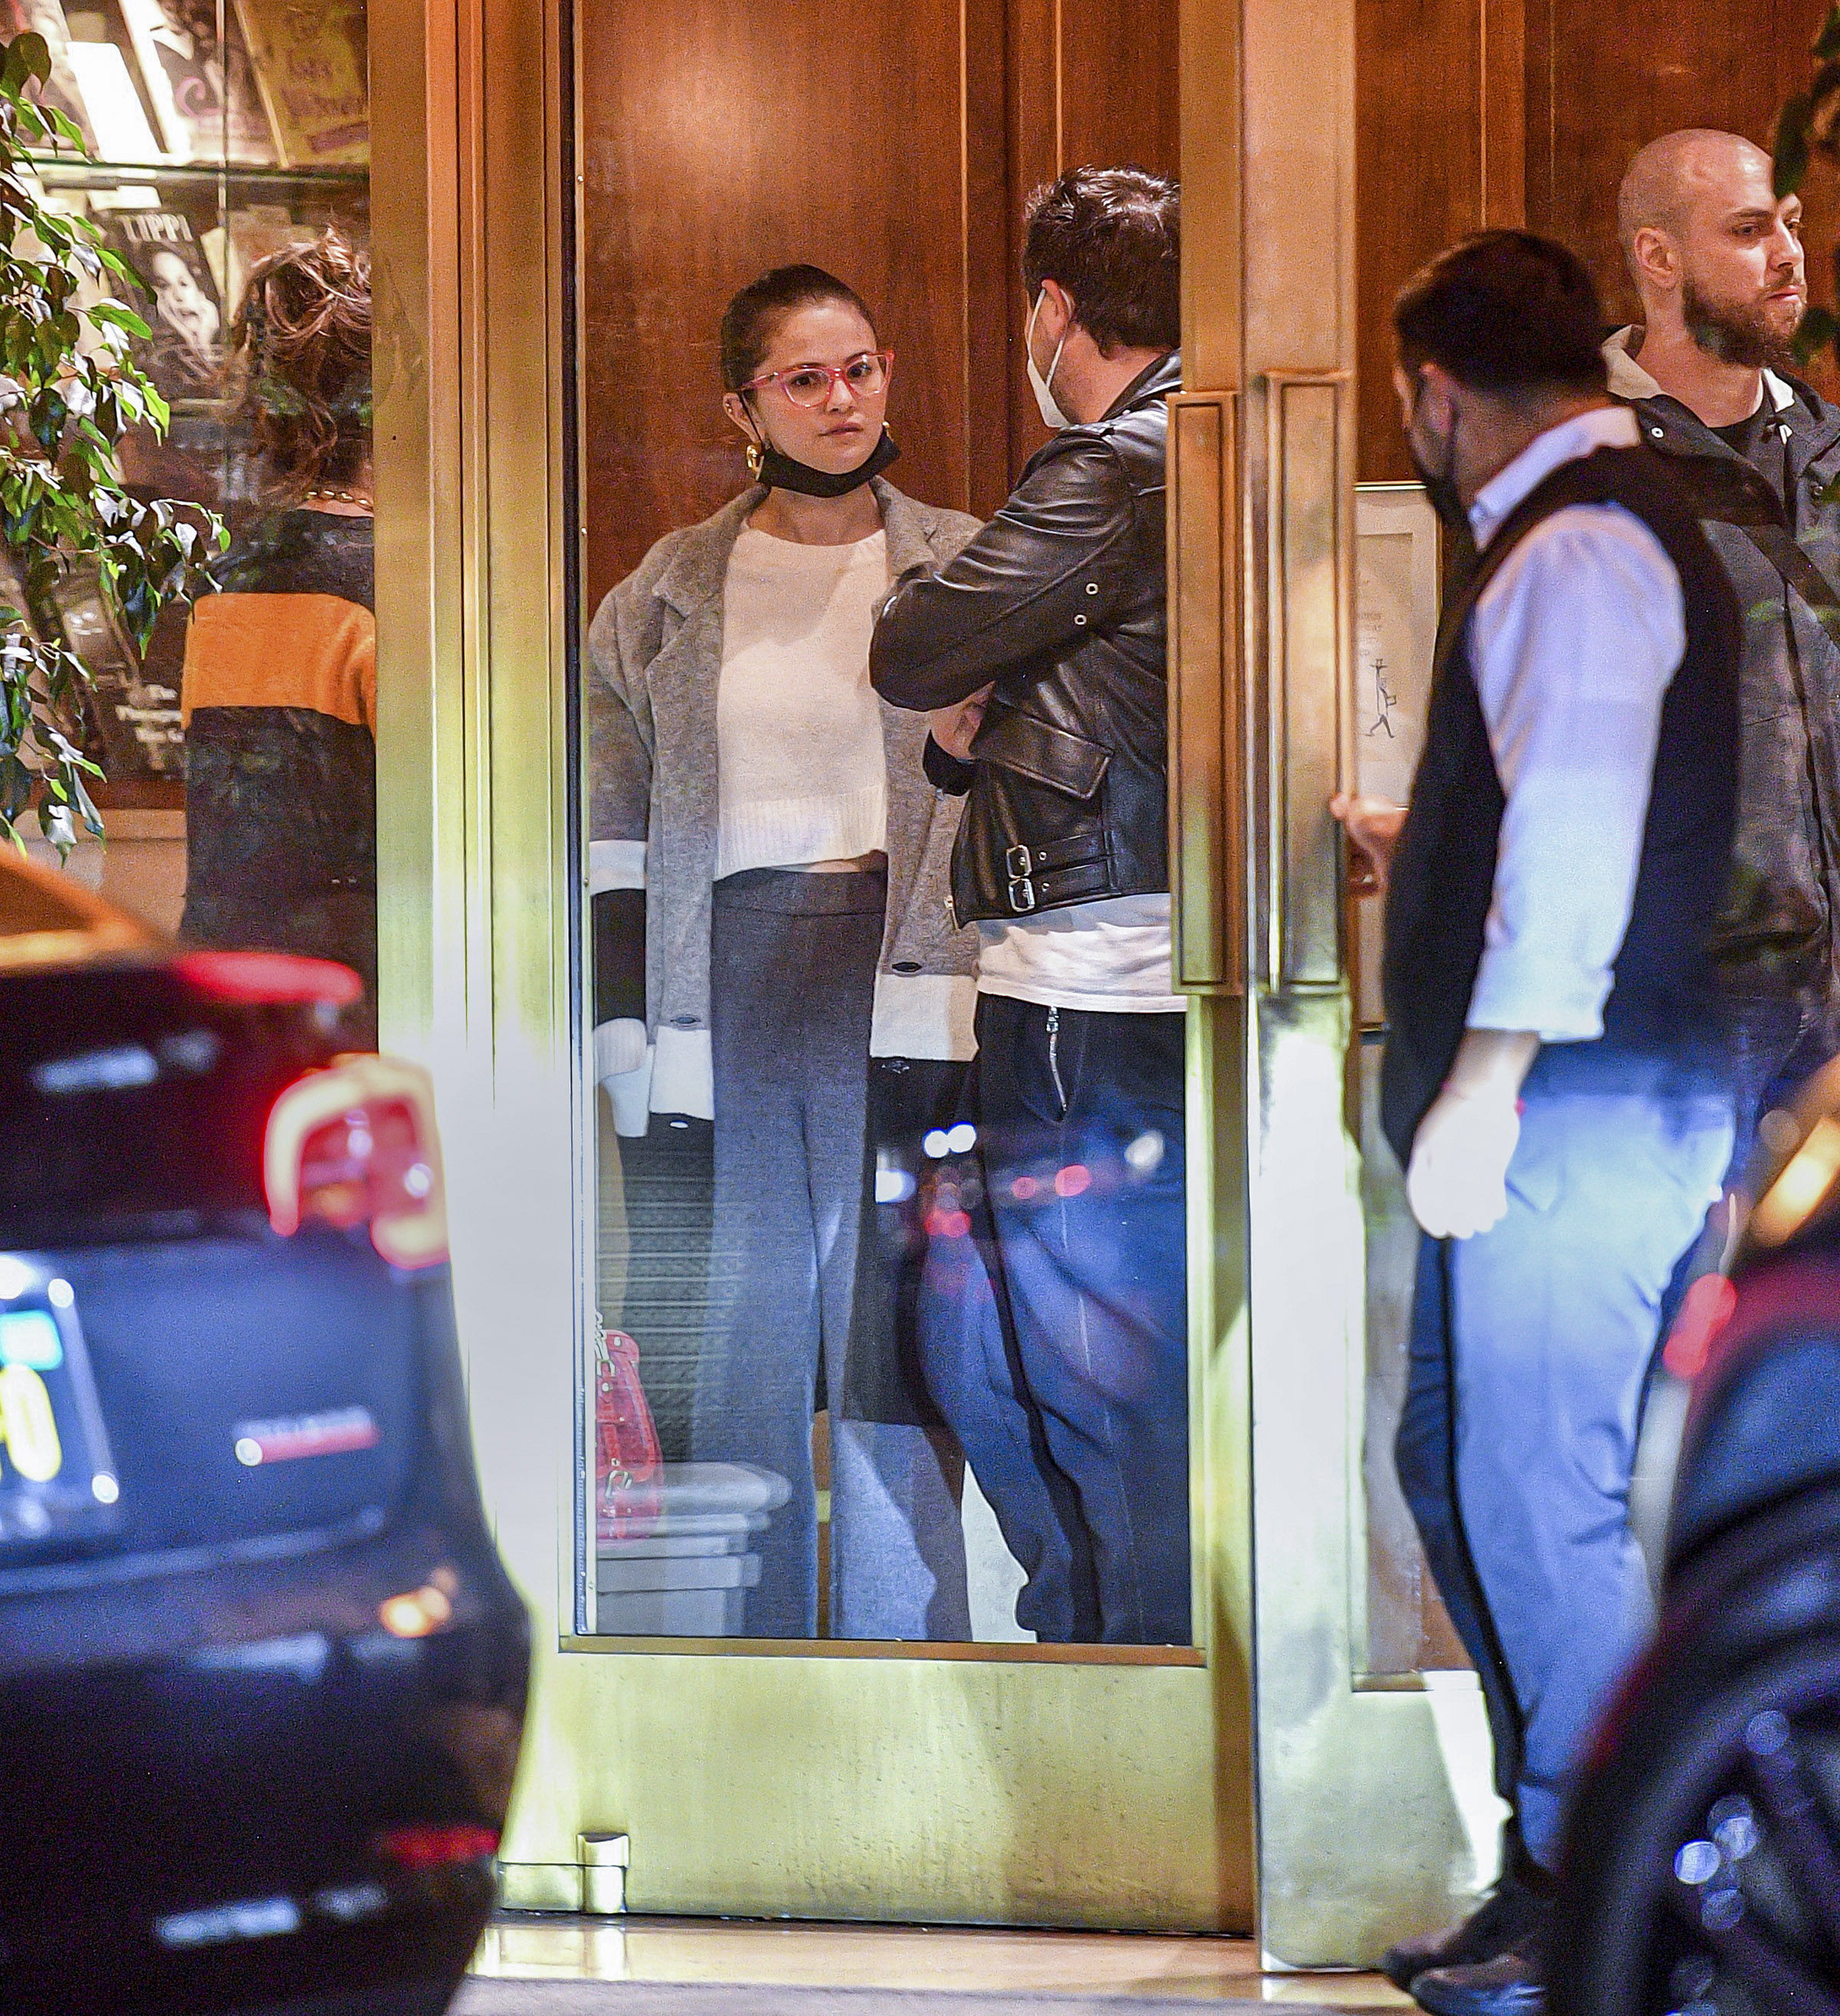 Selena Gomez fue fotografiada cuando salía de un exclusivo restaurante al que fue a comer acompañada por un hombre. Ambos intentaron pasar desapercibidos y cuando notaron que había fotógrafos, él se puso de espaldas a la puerta del salón para evitar ser retratado